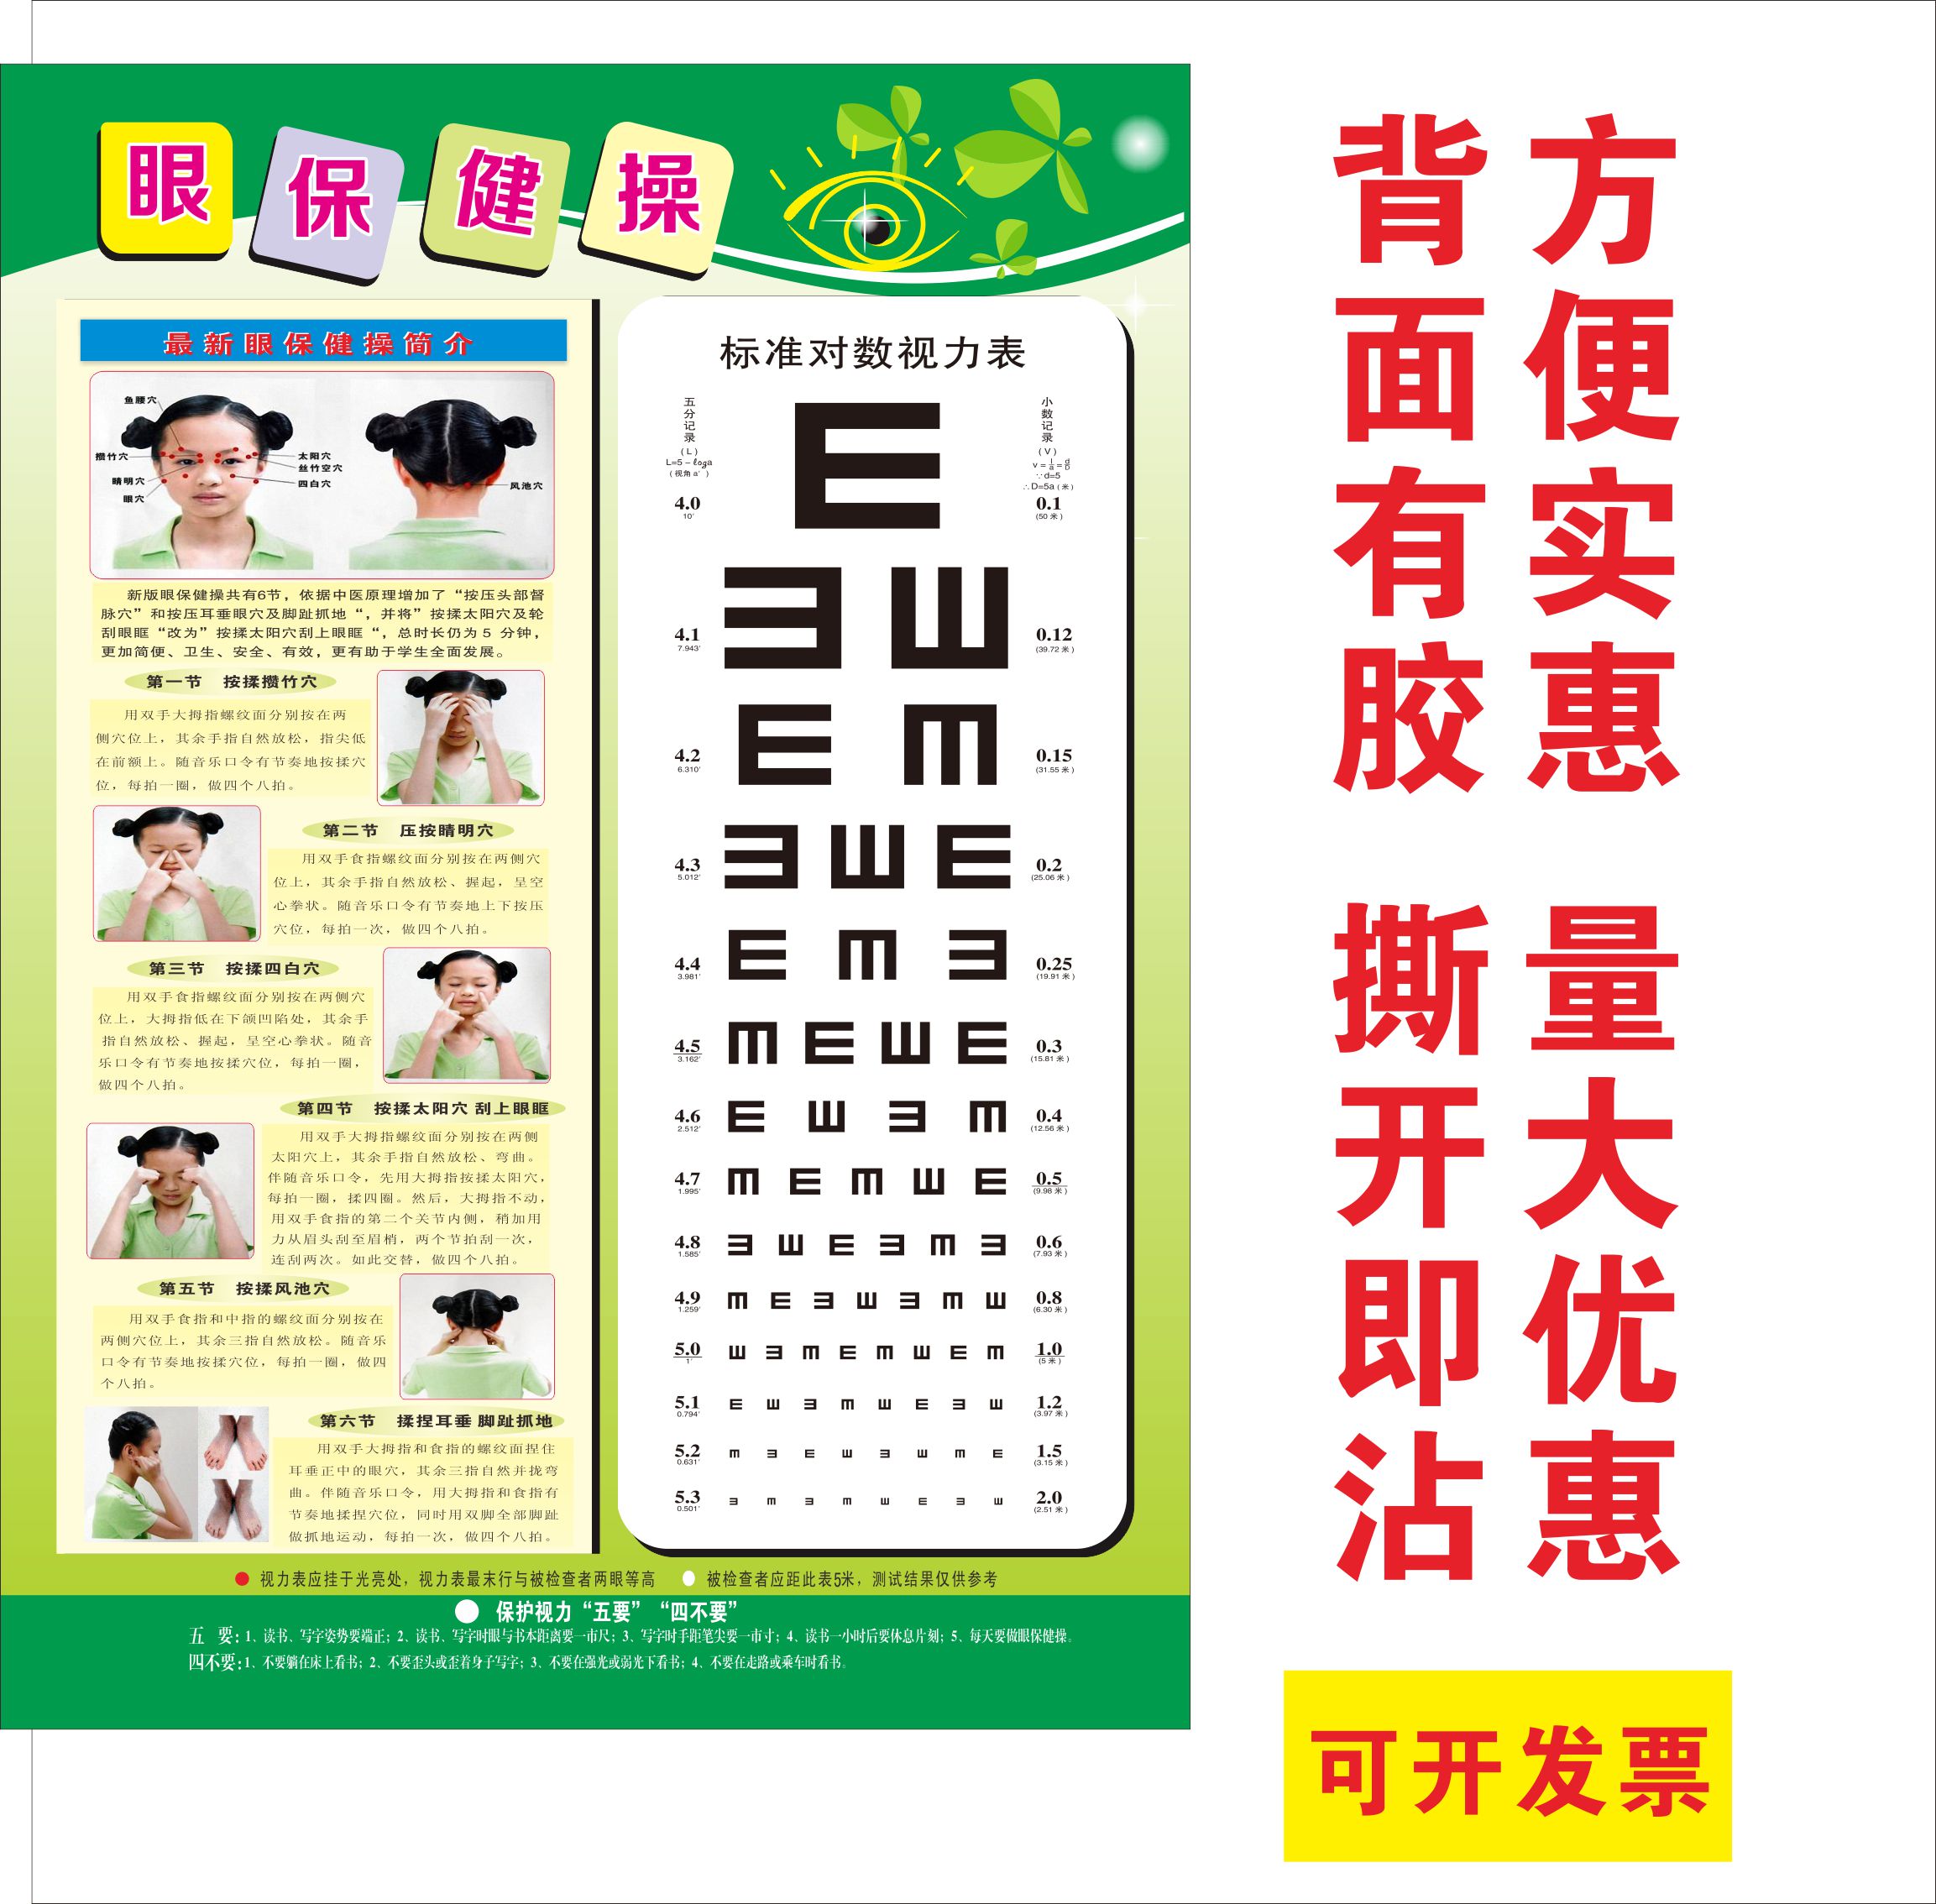 中小学眼保健操挂图标准视力对数表自带背学校贴纸视力测试对照表